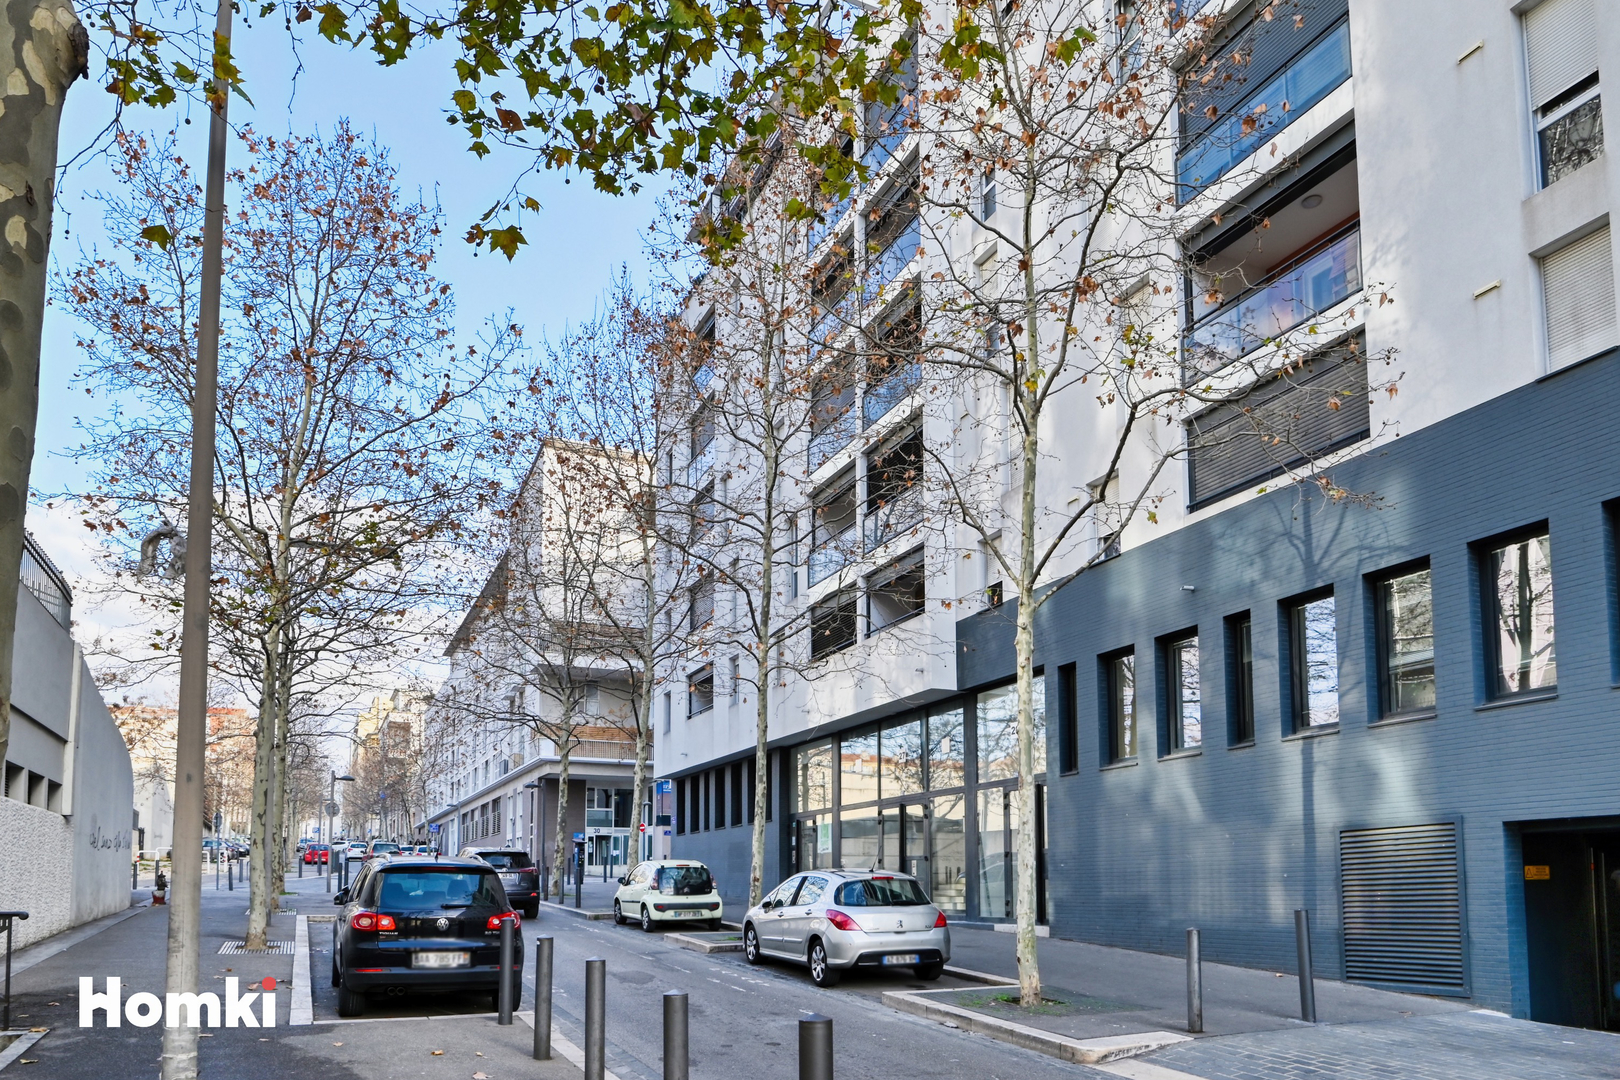 Homki - Vente Appartement  de 40.0 m² à Marseille 13002